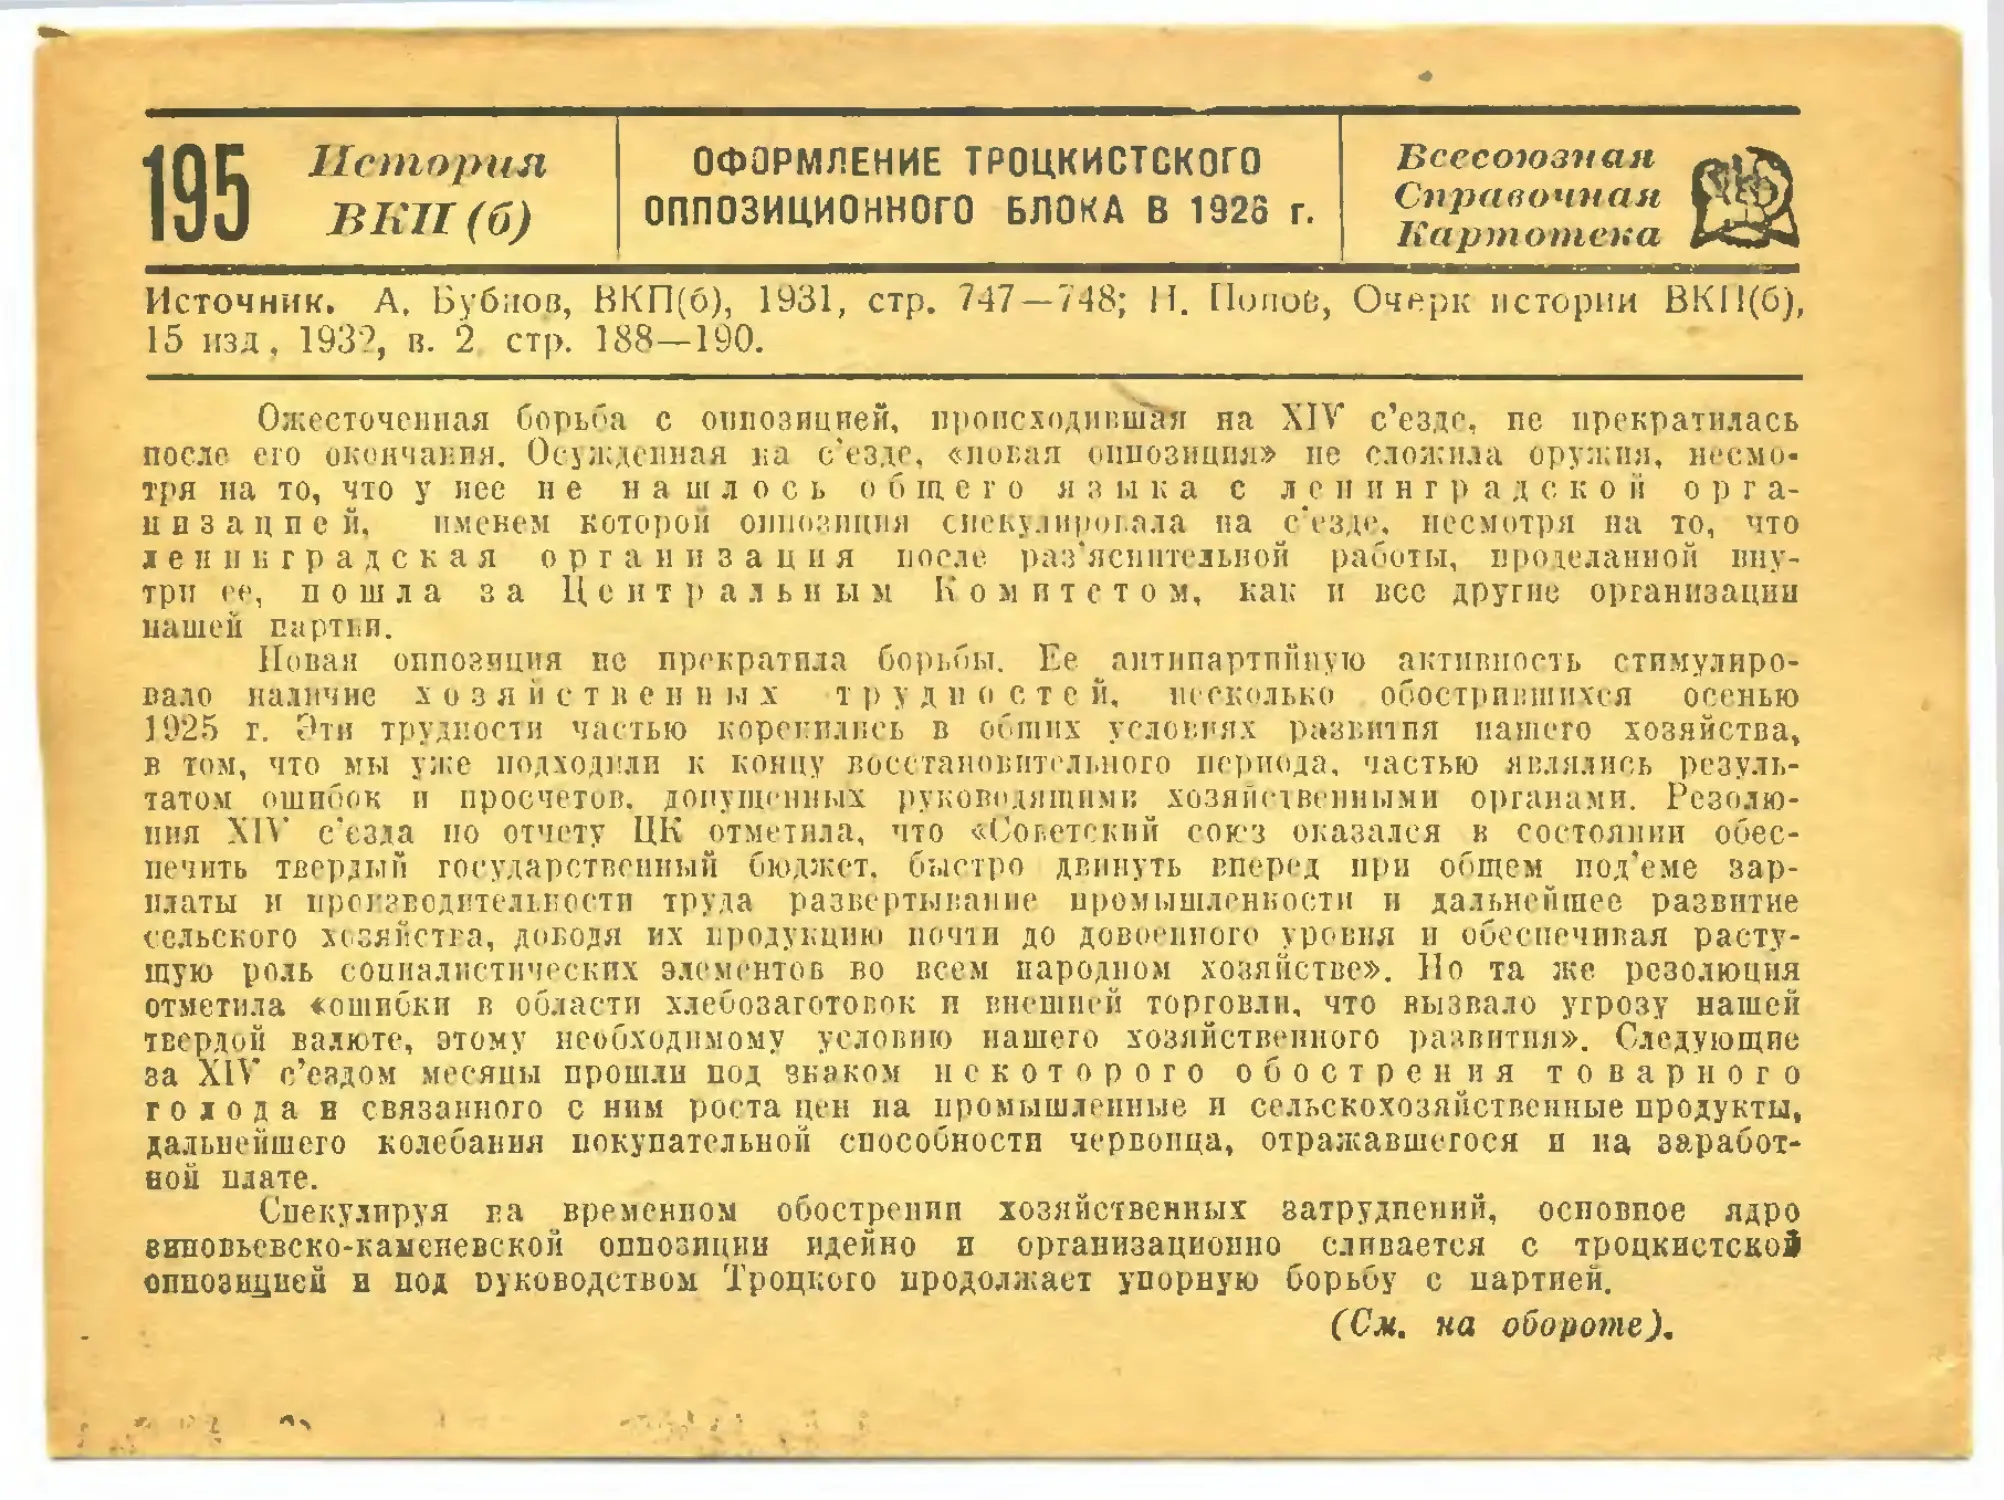 195. Оформление троцкистского оппозиционного блока в 1926 г.